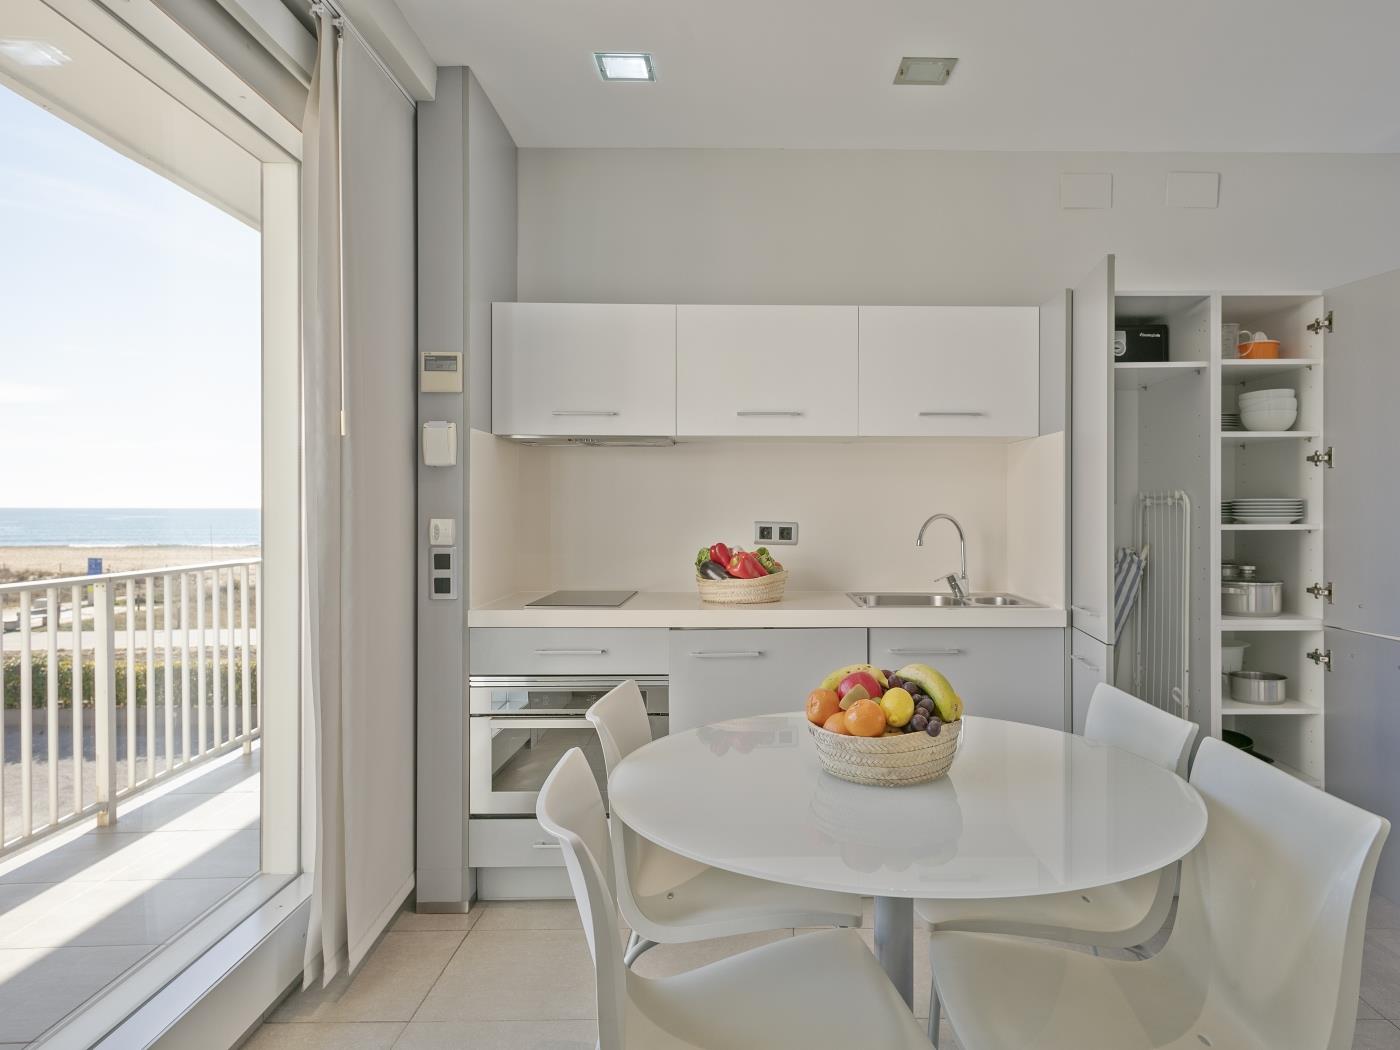 Apartamento standart con vistas al mar ambos lados en Castelldefels